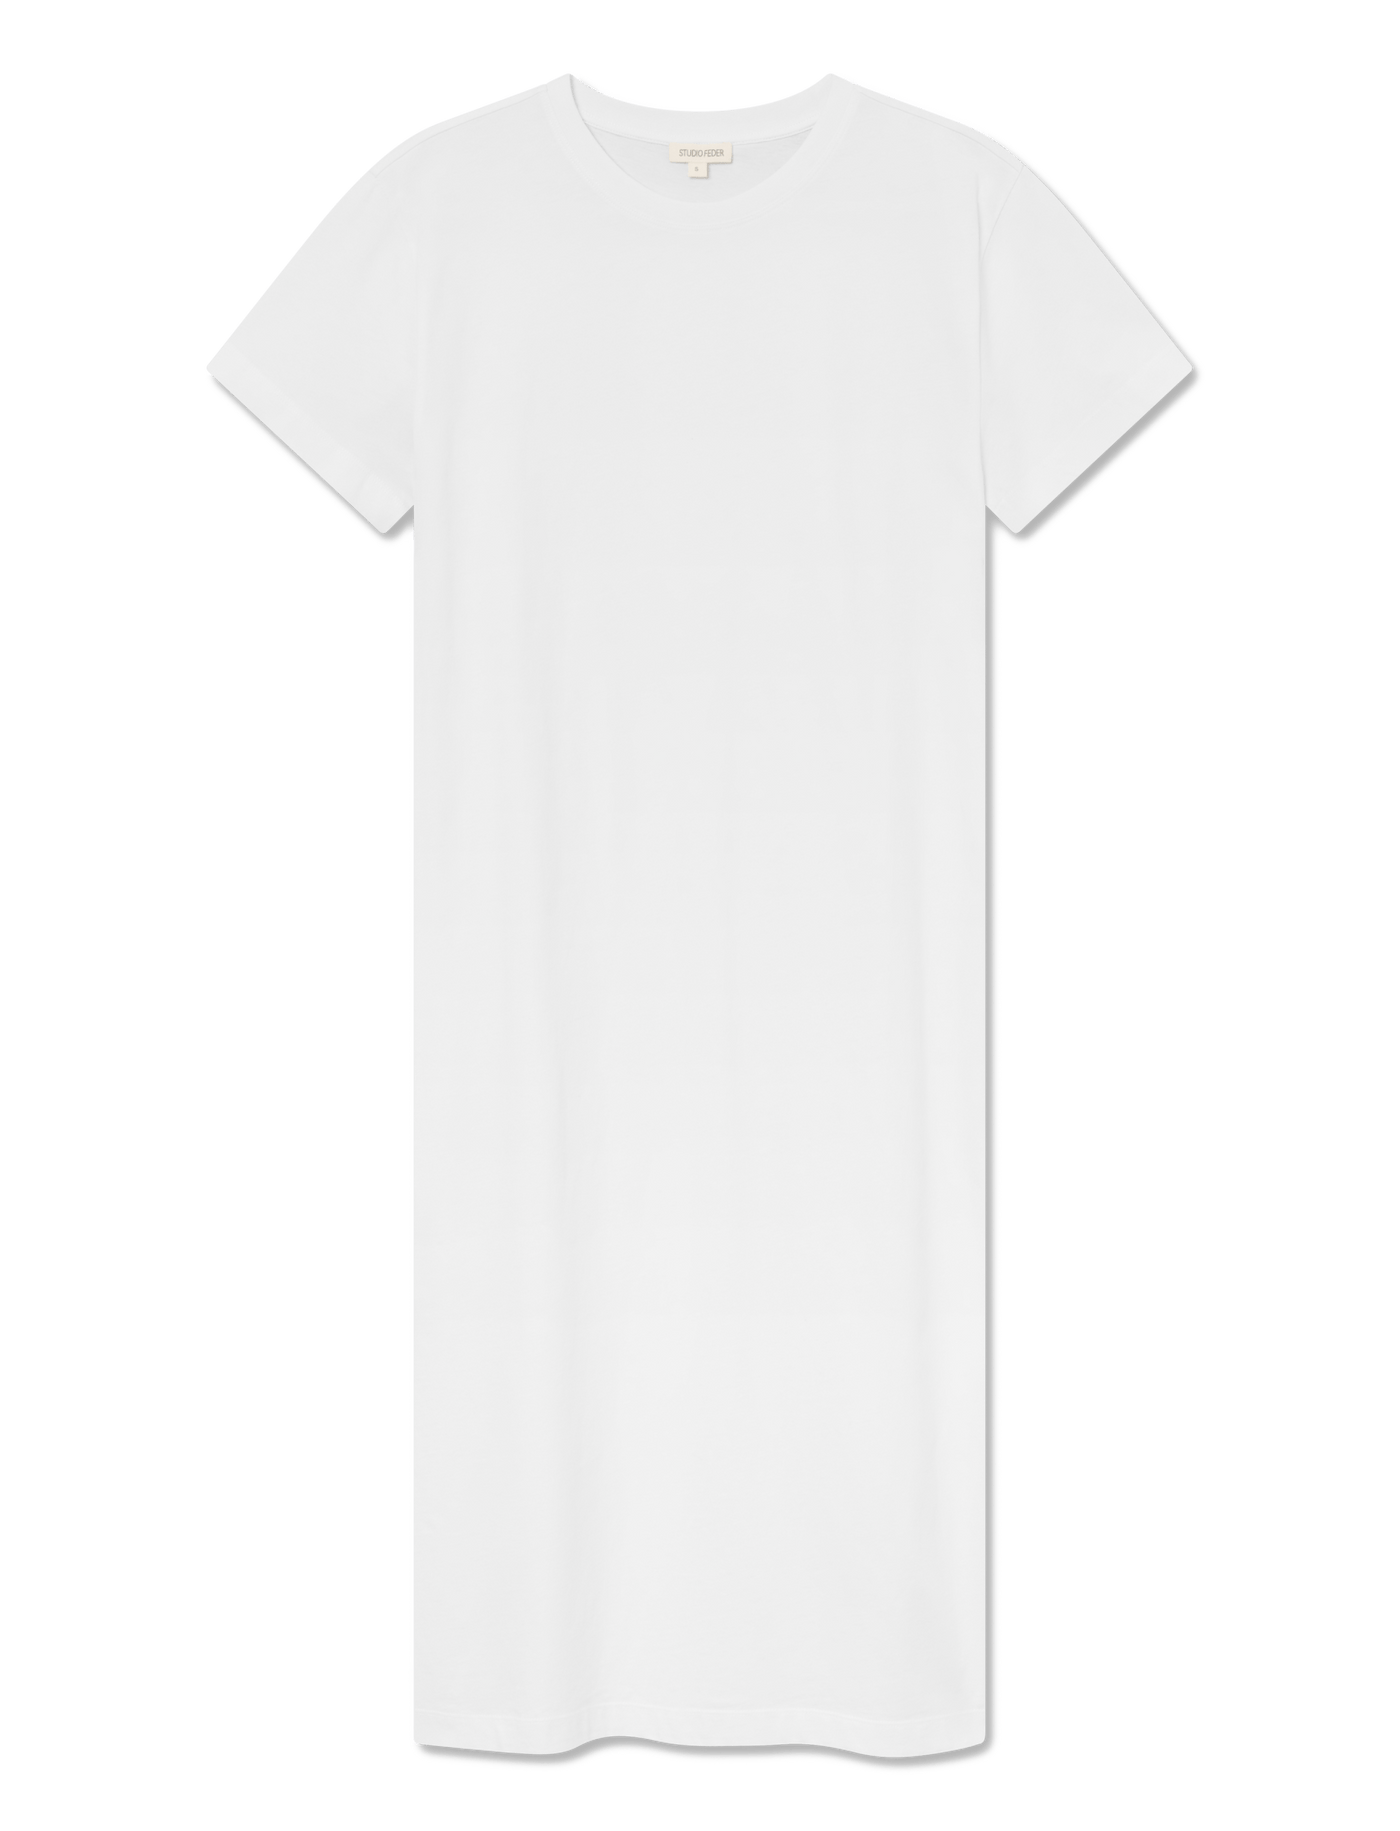 Maya T-shirt Dress - WHITE